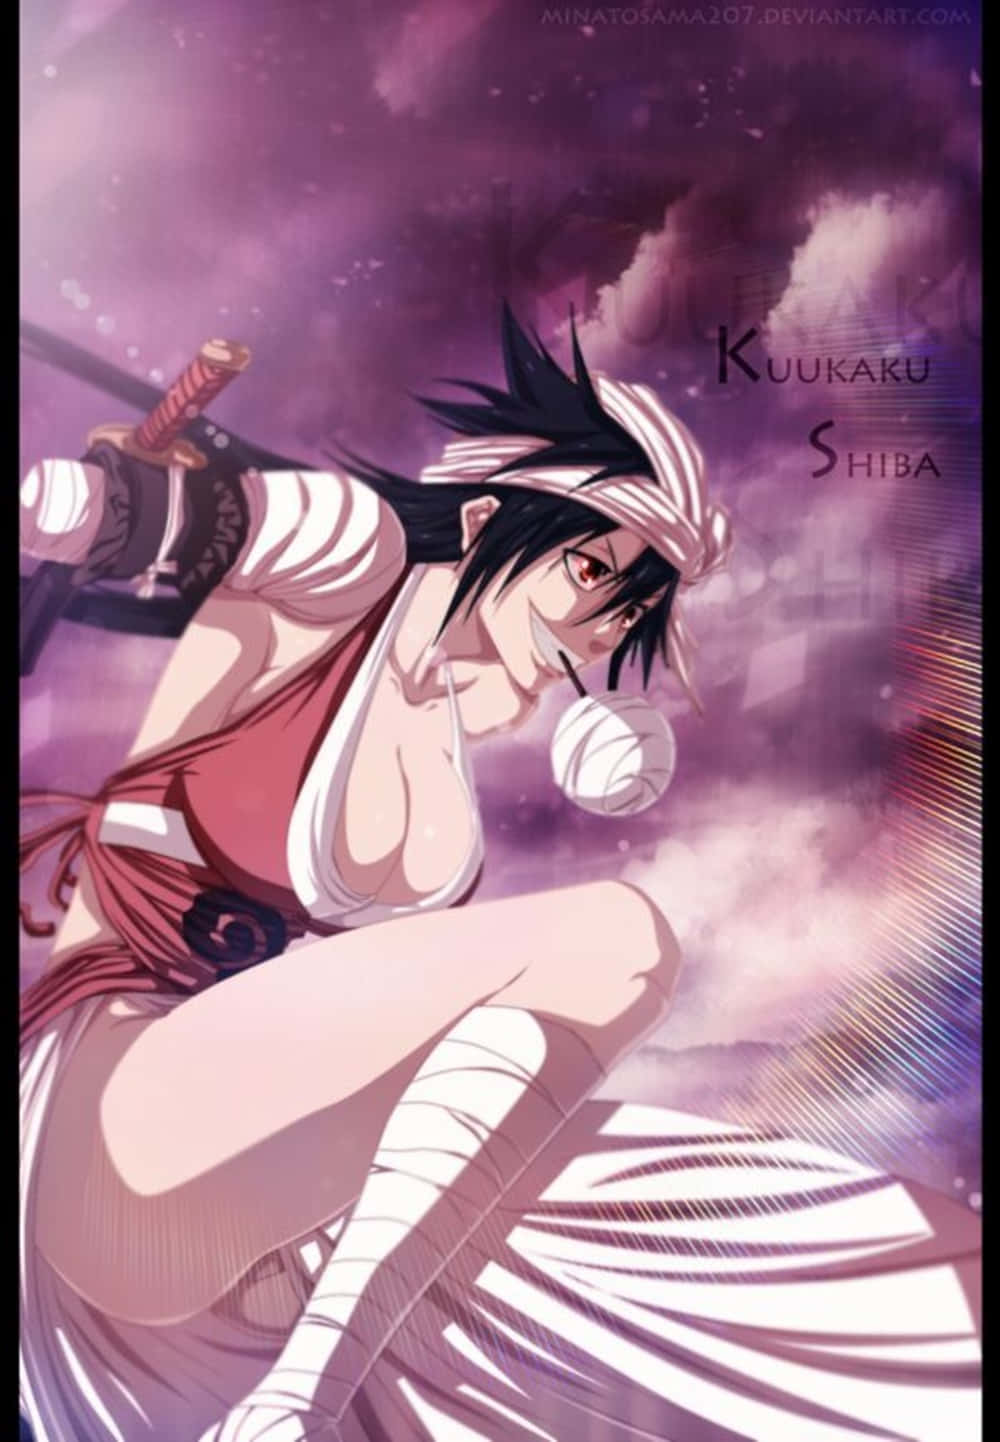 Kukaku Shiba Displaying Her Strong Warrior Spirit Wallpaper